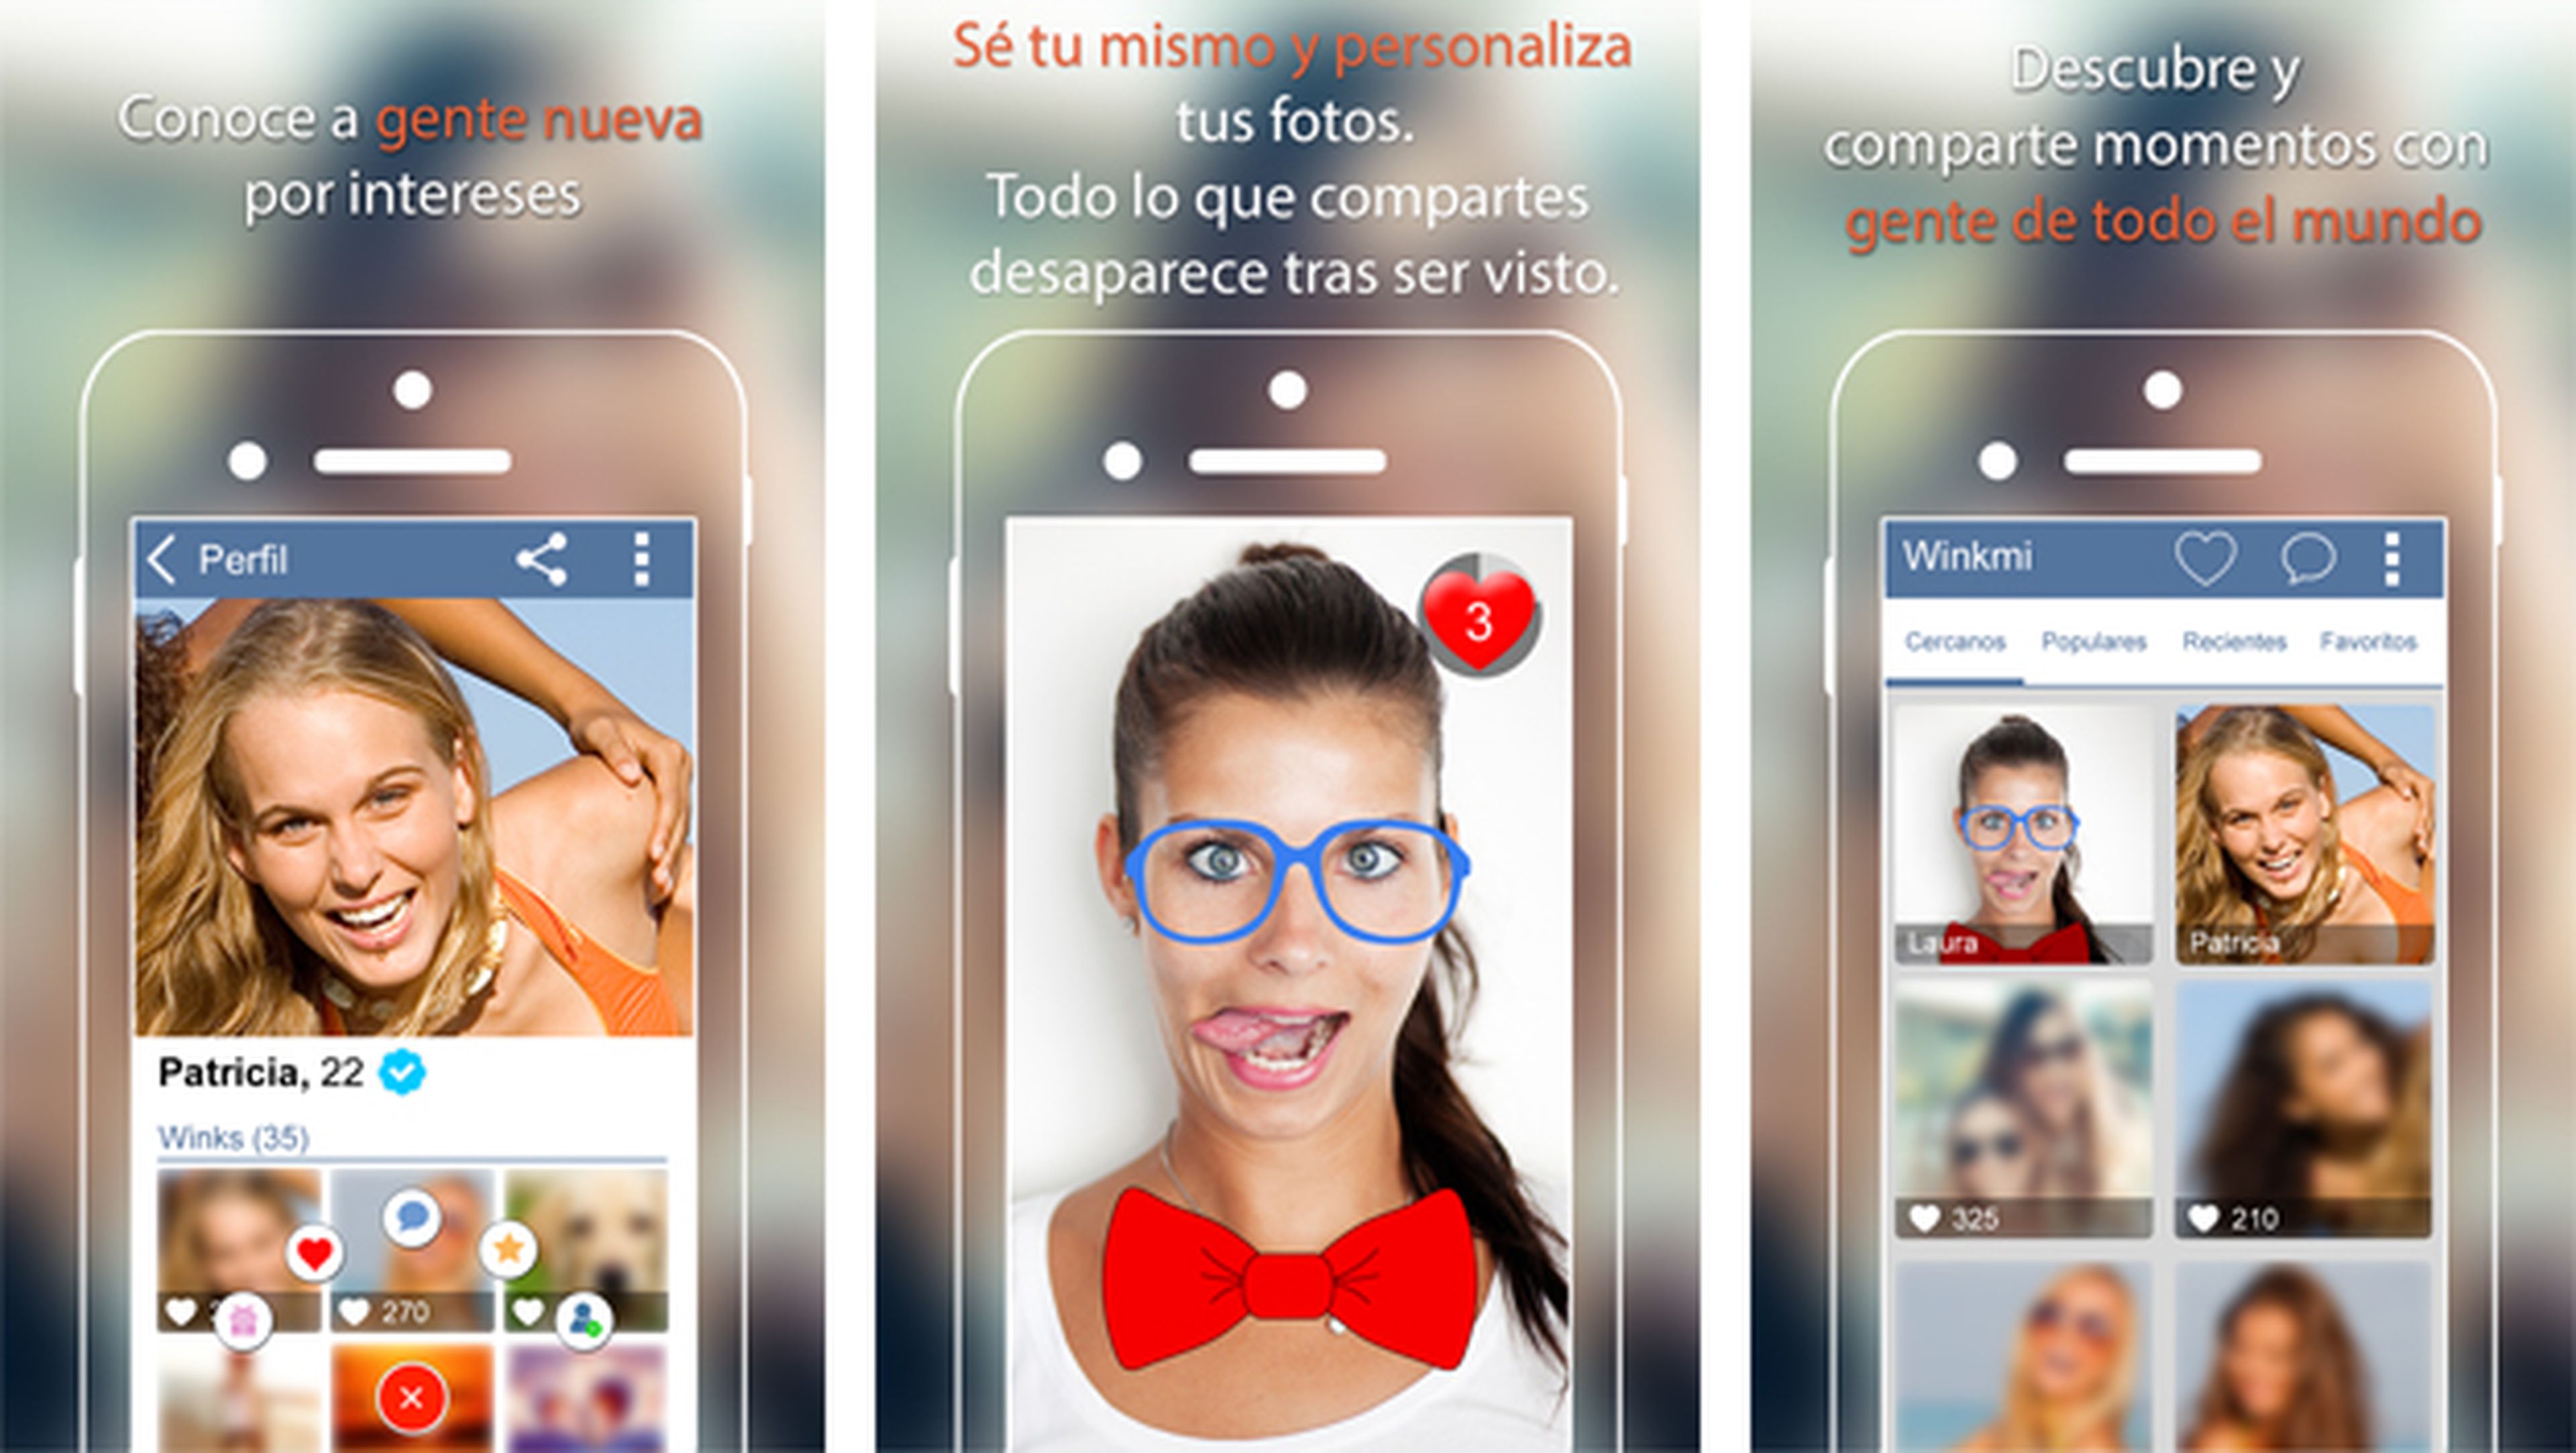 Winkmi, una app para compartir momentos y conocer gente